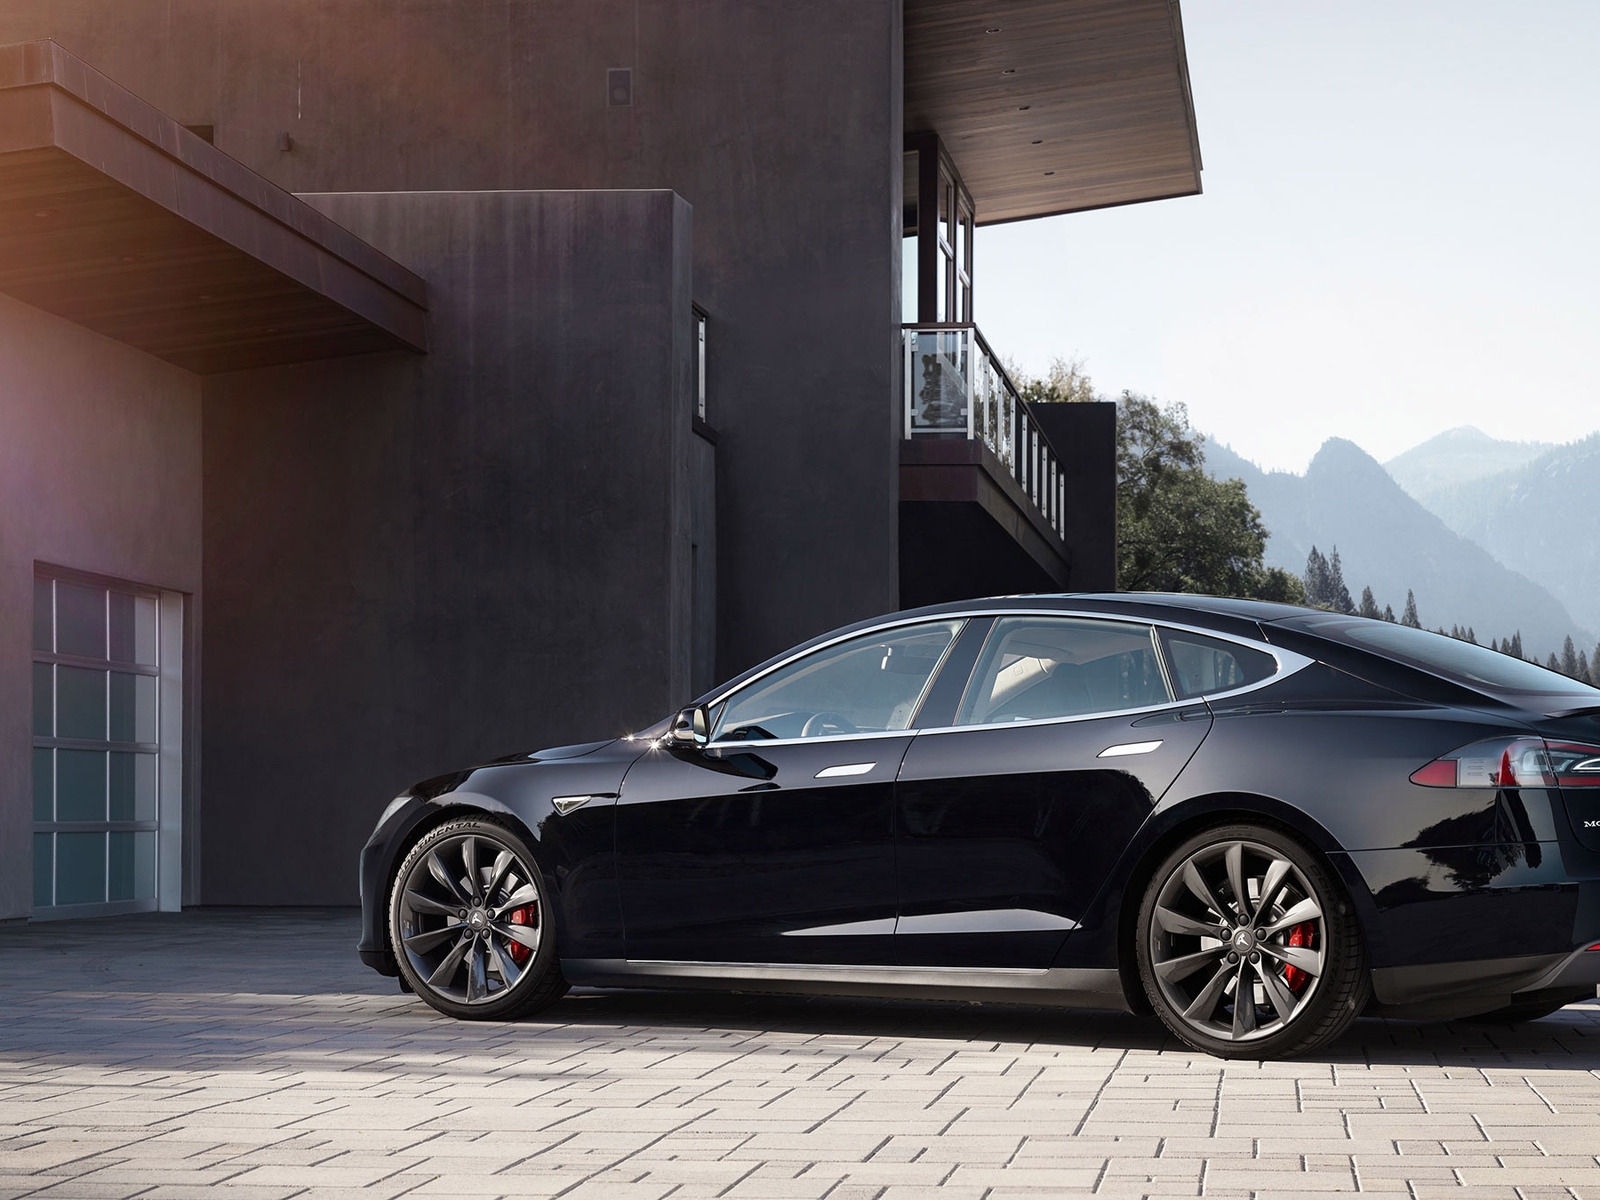 Black Tesla Model S 2015 for 1600 x 1200 resolution